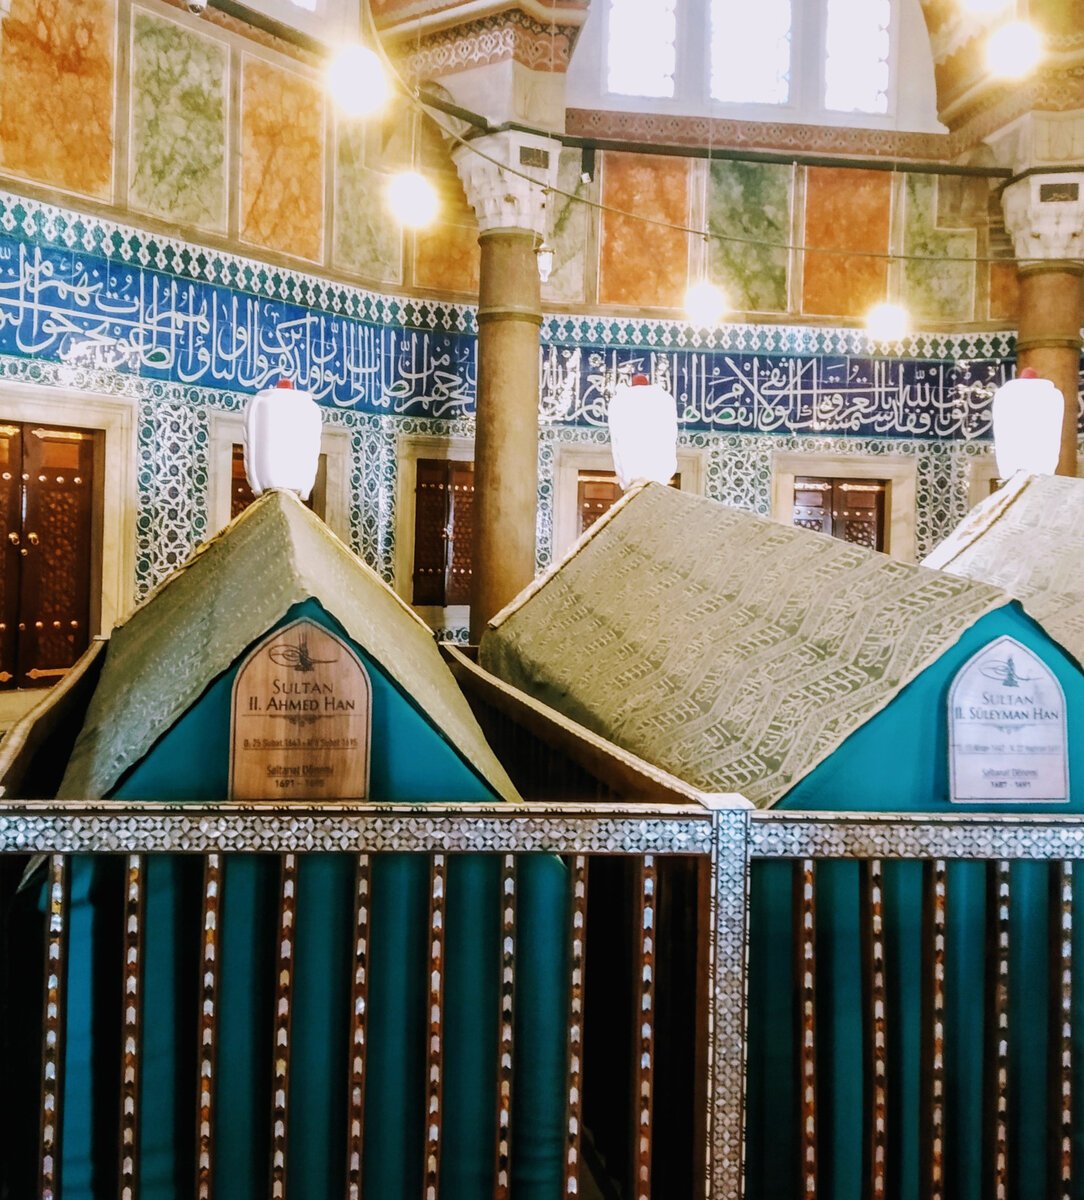 фото мечети султана сулеймана в турции